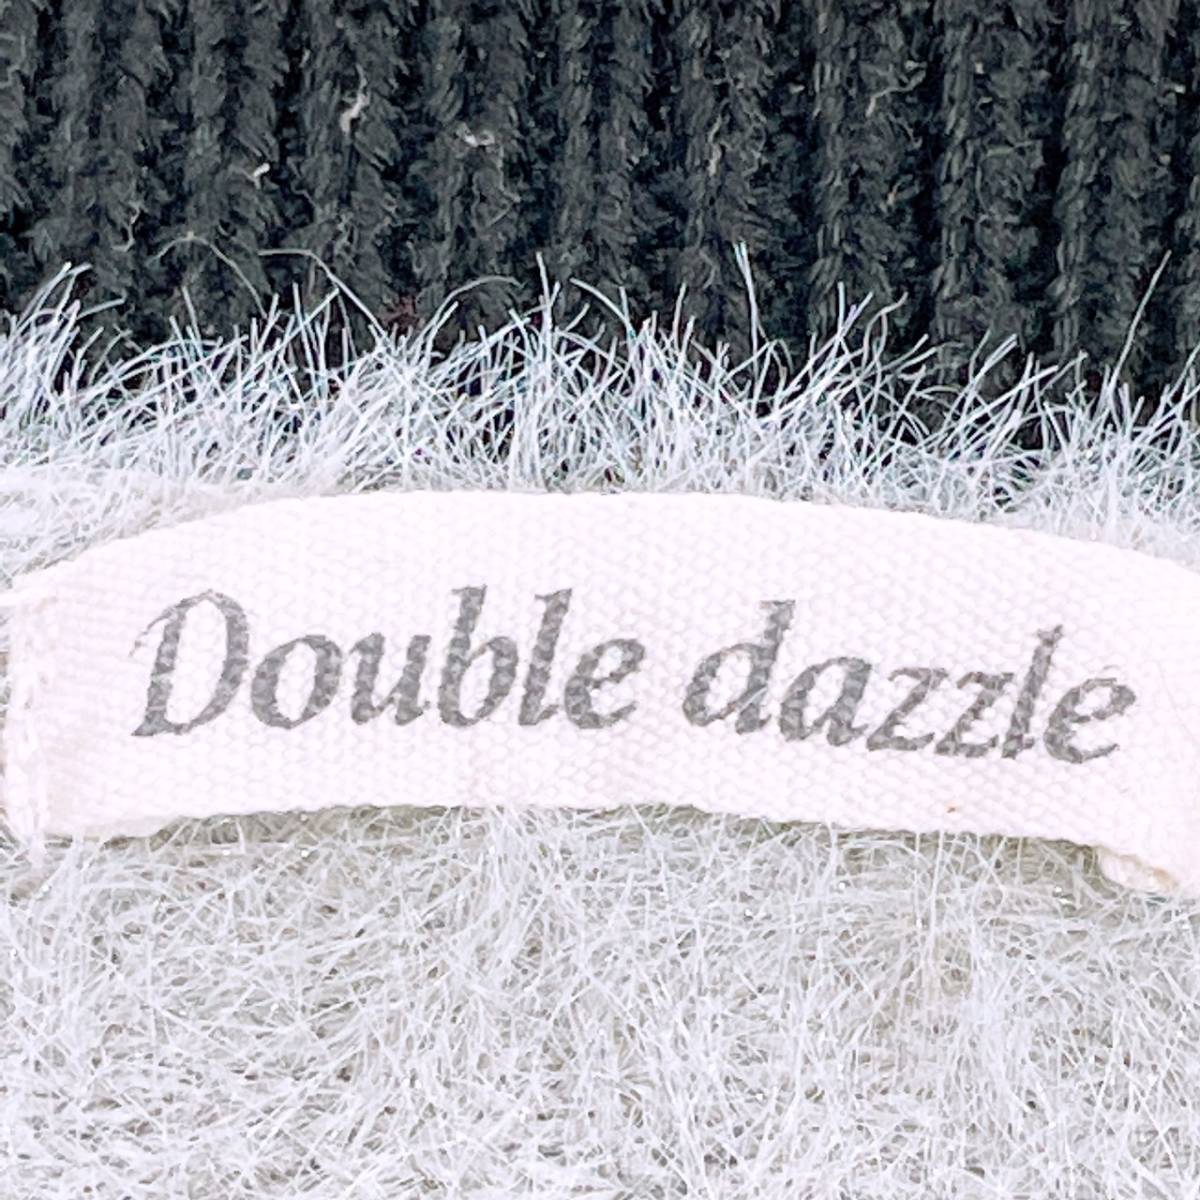 レディースM Double dazzle トップス セーター 長袖セーター ニットセーター ブルー ストライプ 丸ネック 秋冬 ダブルダージル 【22358】